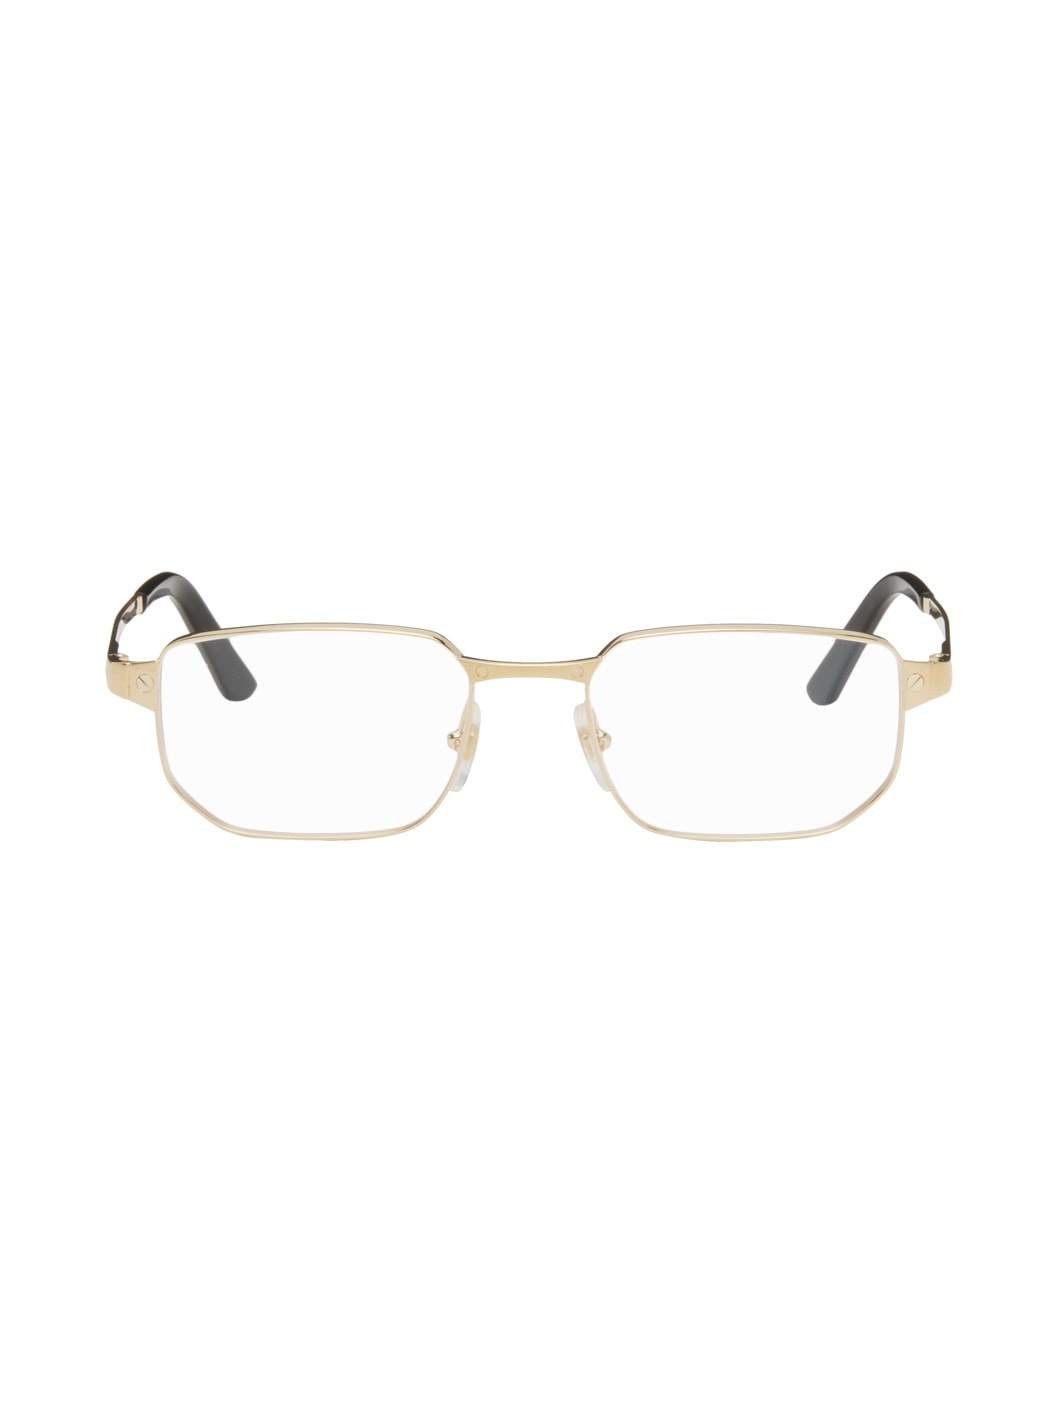 Gold Rectangular Glasses - 1